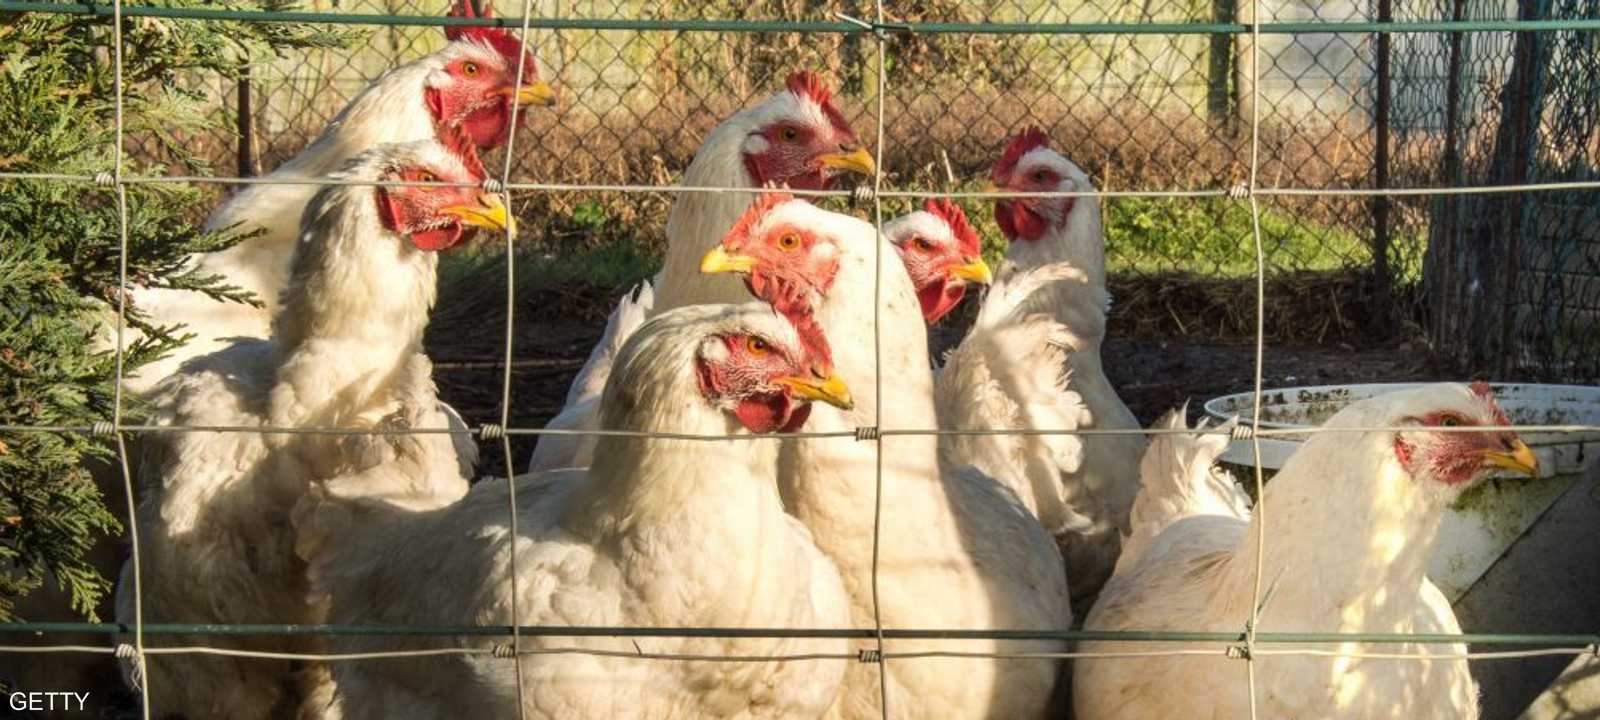 رصد مرض إنفلونزا الطيور في ولاية فيكتوريا بأستراليا